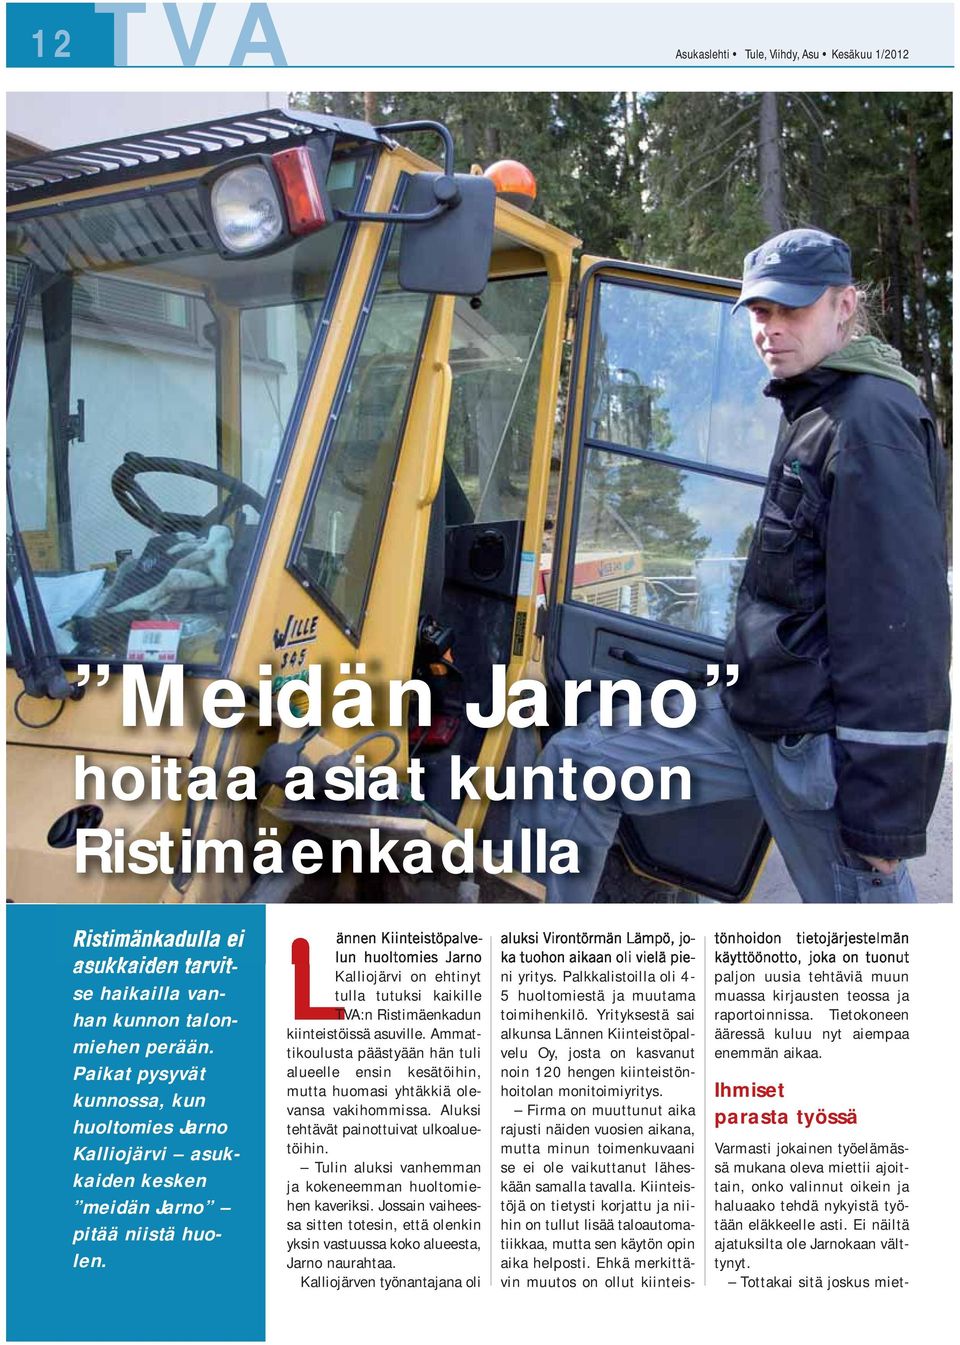 Lännen Kiinteistöpalvelun huoltomies Jarno Kalliojärvi on ehtinyt tulla tutuksi kaikille TVA:n Ristimäenkadun kiinteistöissä asuville.